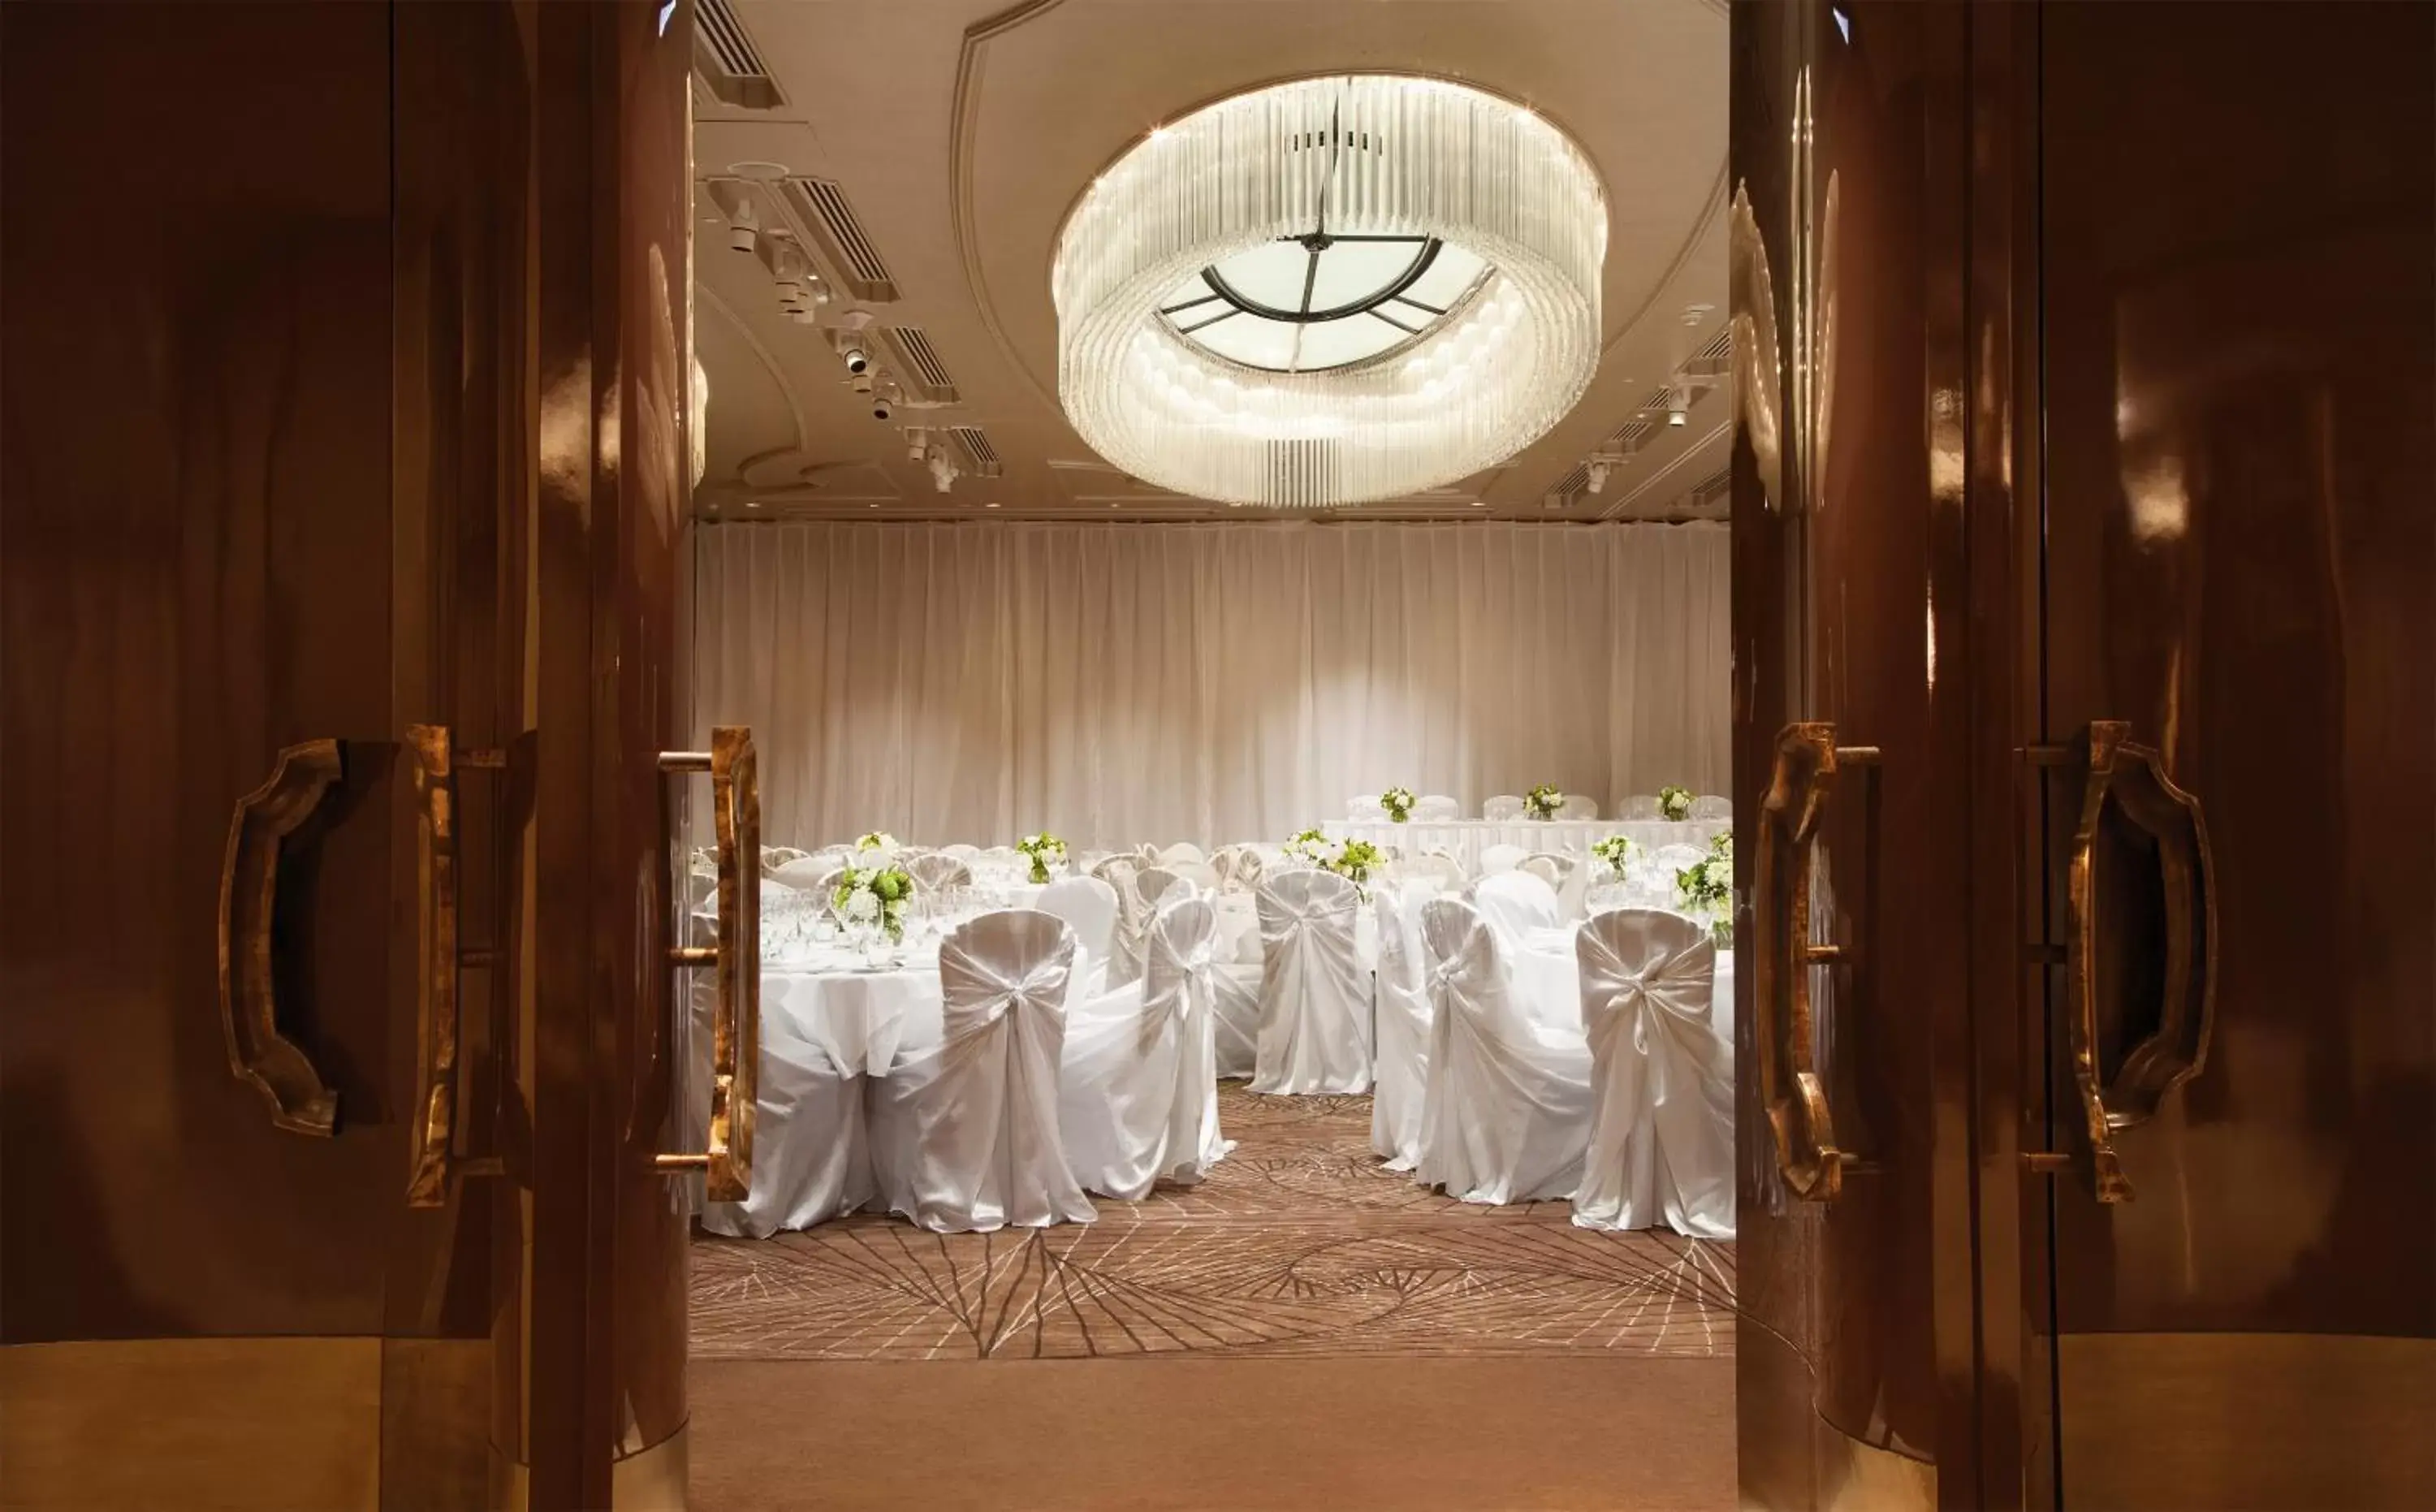 Banquet/Function facilities, Banquet Facilities in Shangri-La Sydney